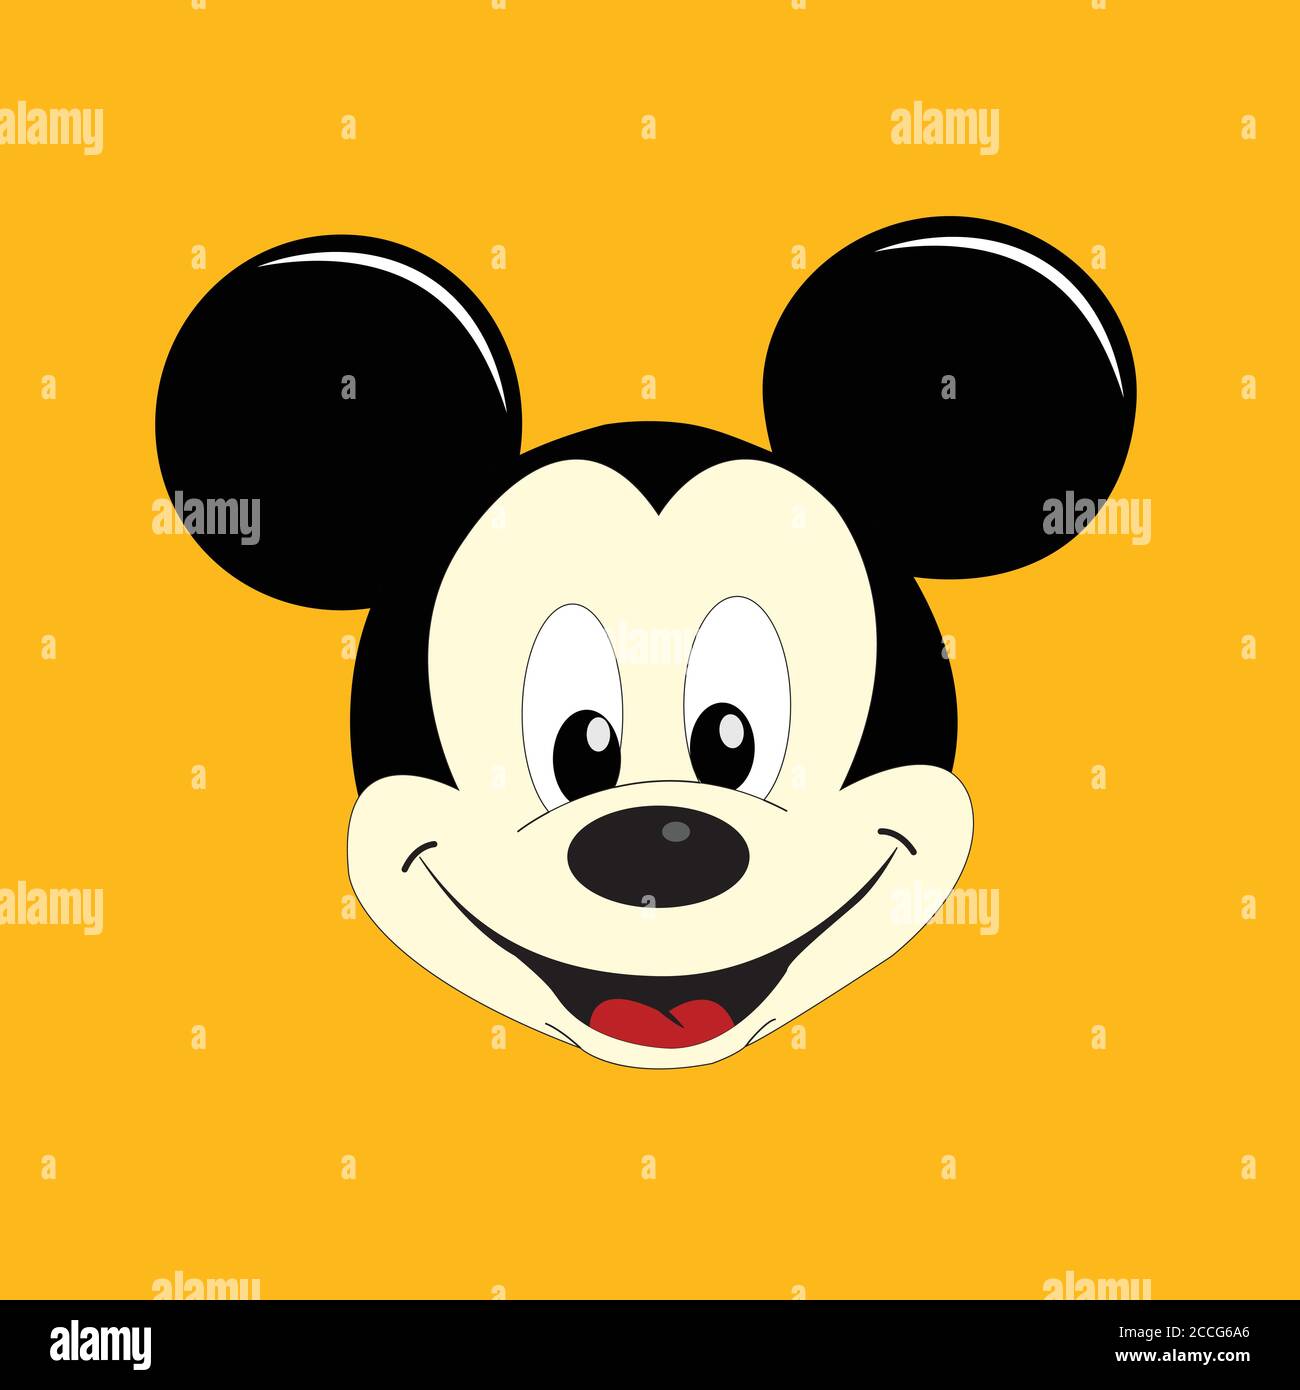 Vektor-Illustration von Mickey Mouse auf weißem Hintergrund. Stock Vektor